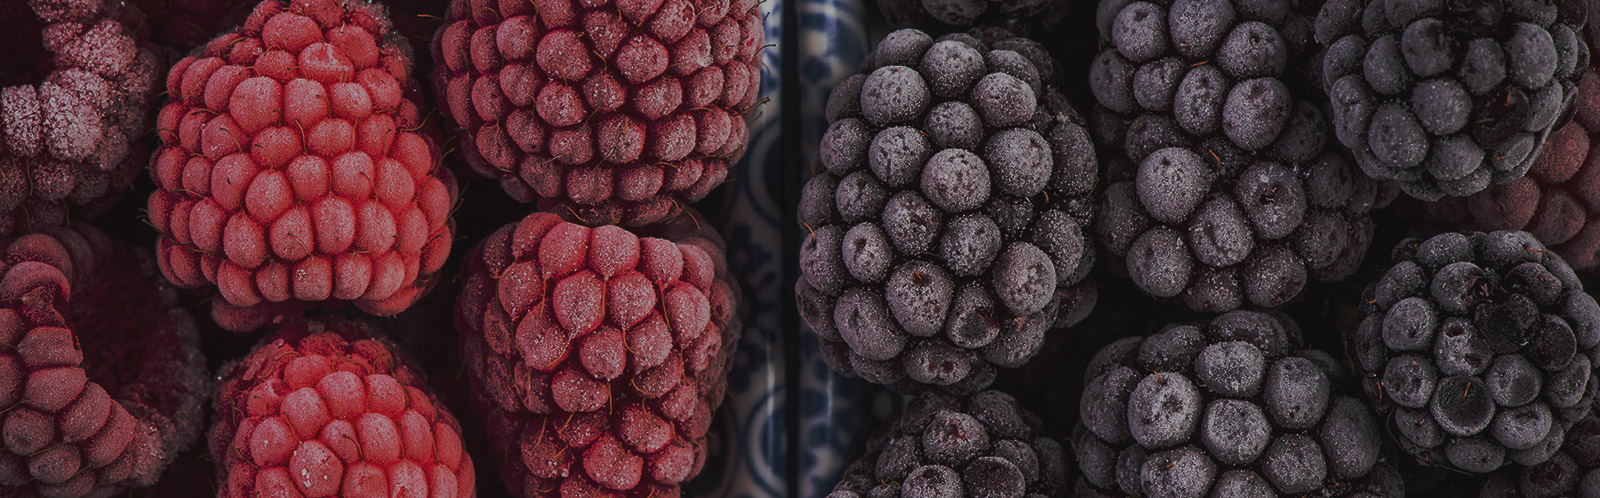 El arándano, la 'estrella' de la exportación entre las berries